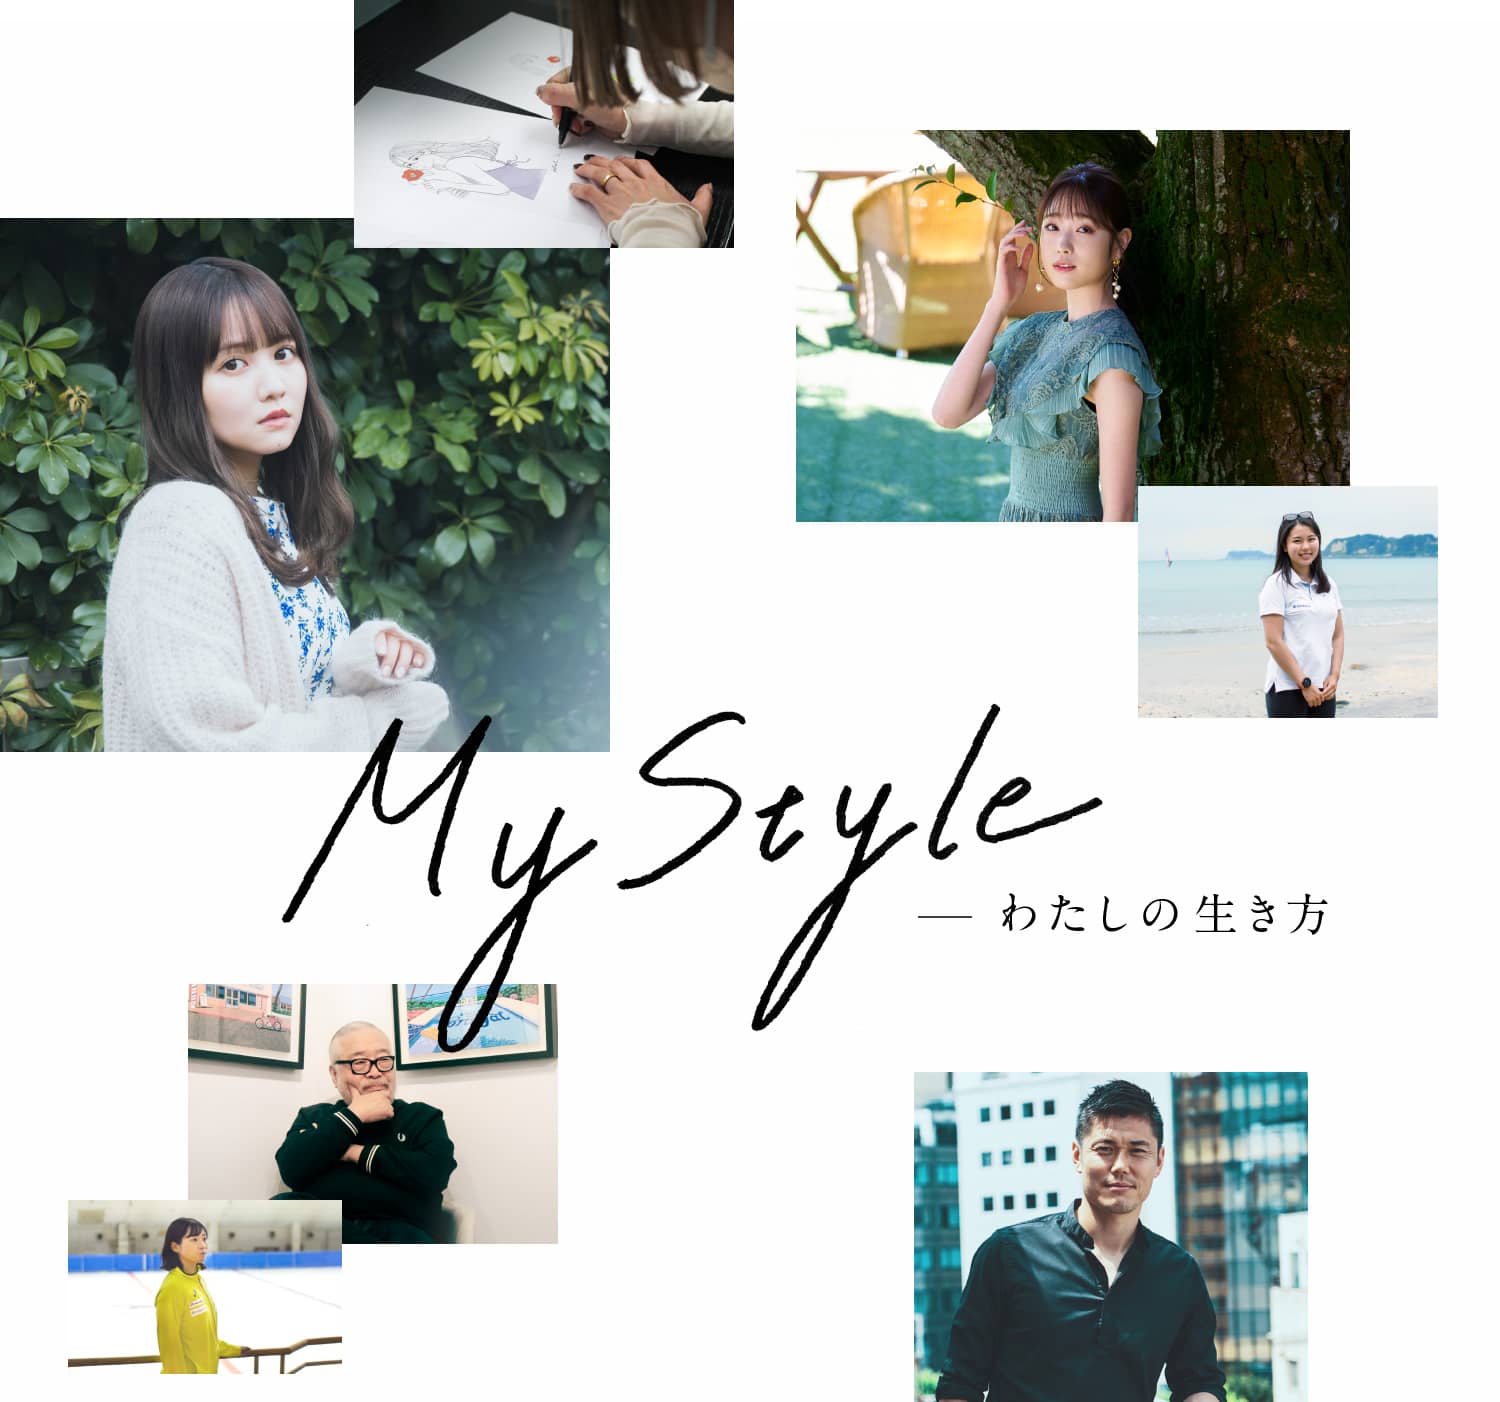 My Style -わたしの生き方